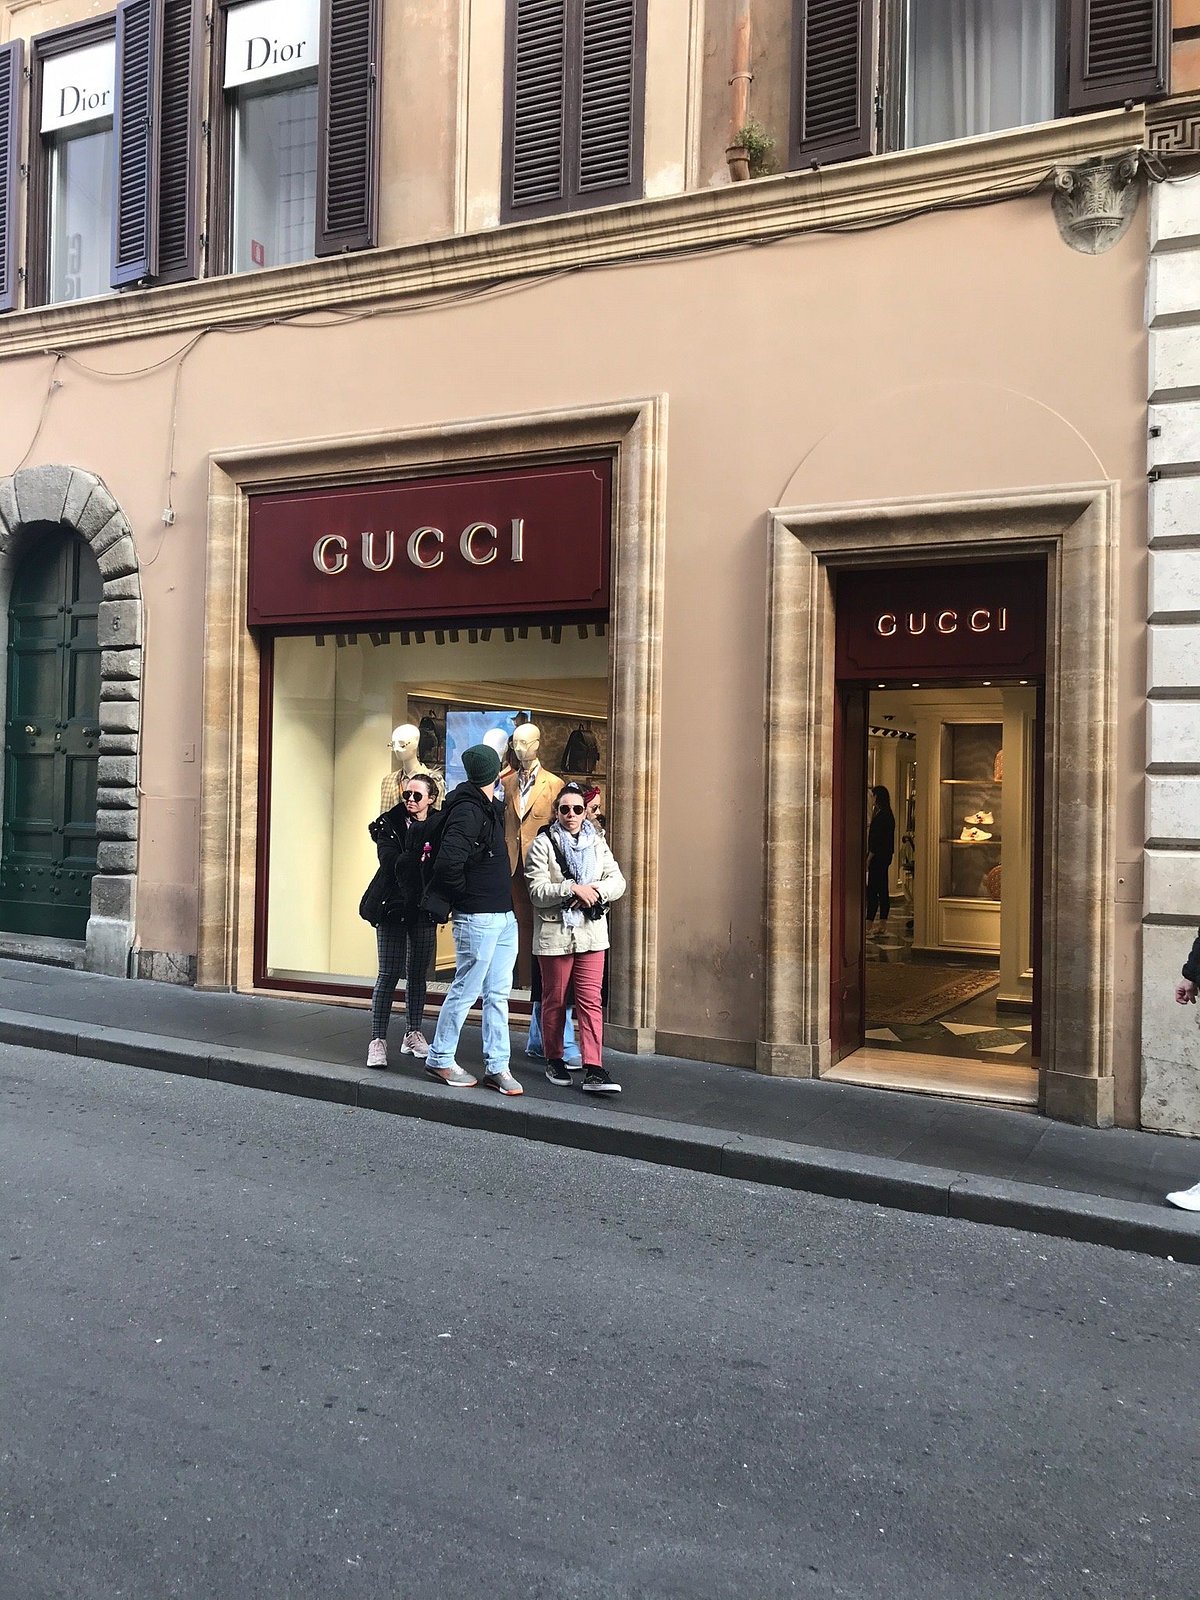 Gucci (โรม, อิตาลี) - รีวิว - Tripadvisor